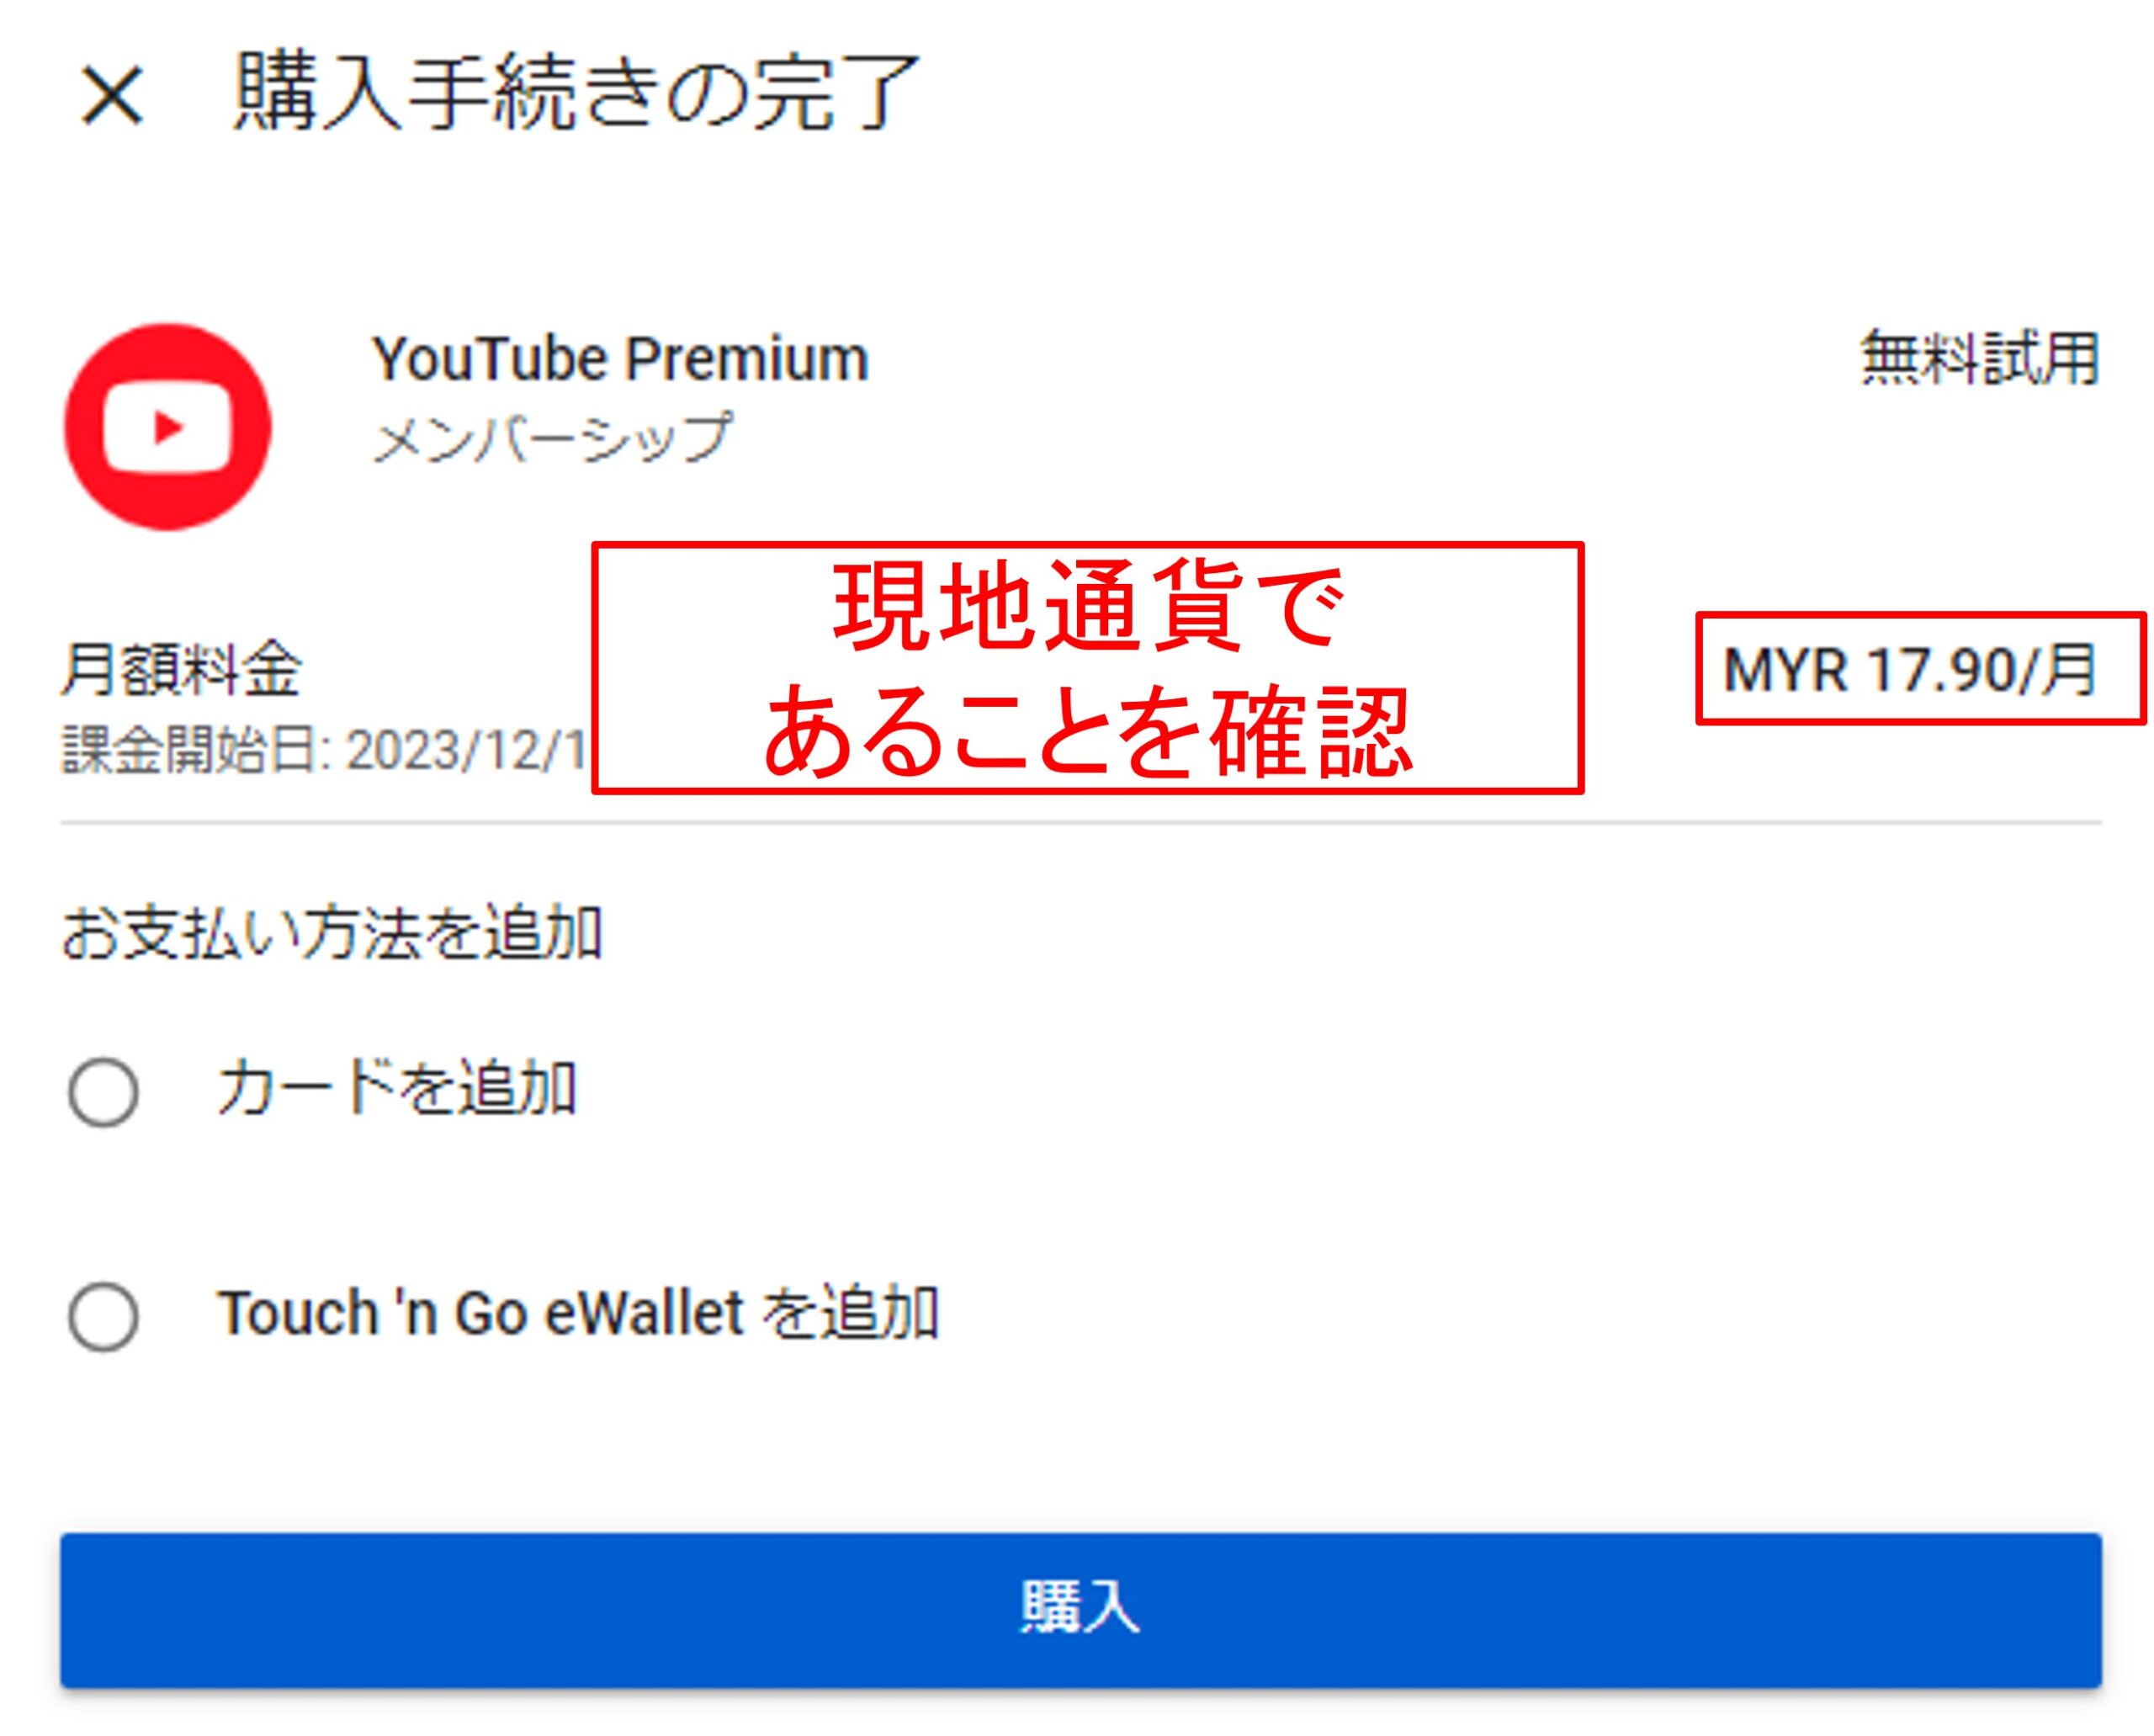 マレーシアのYouTube Premium